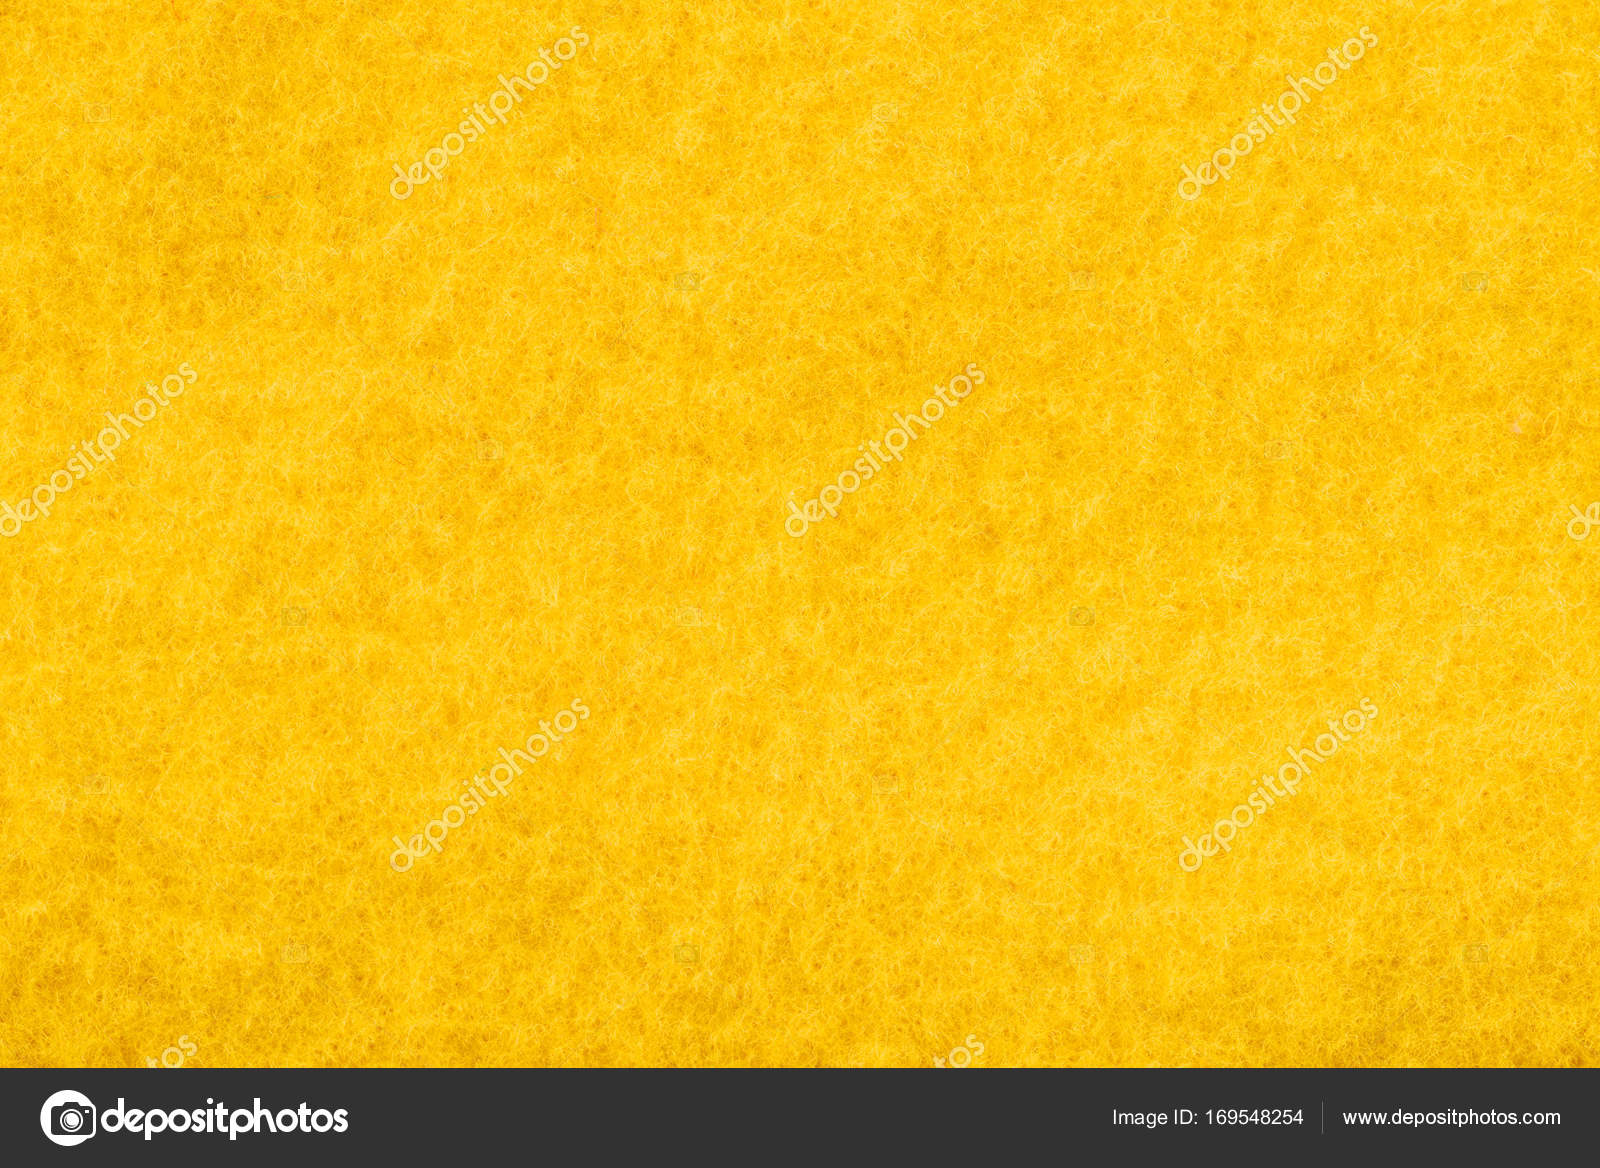 Yellow felt texture Stock Photo by ©VadimVasenin 169548254